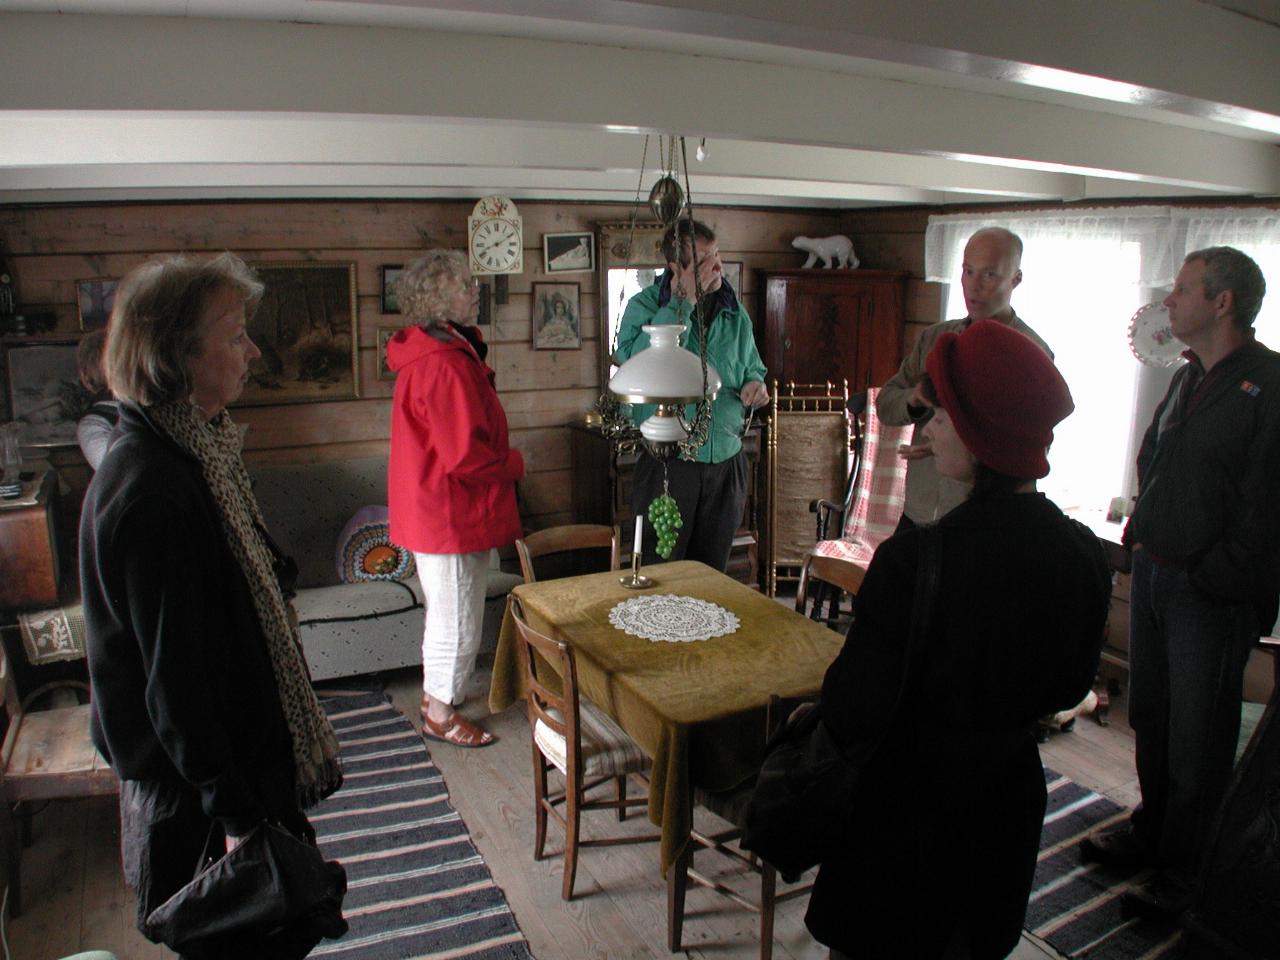 KPLU Viking Jazz: Annette, Barbara (behind), Karen, Jum, Signe, Director, Joey in living room of old home